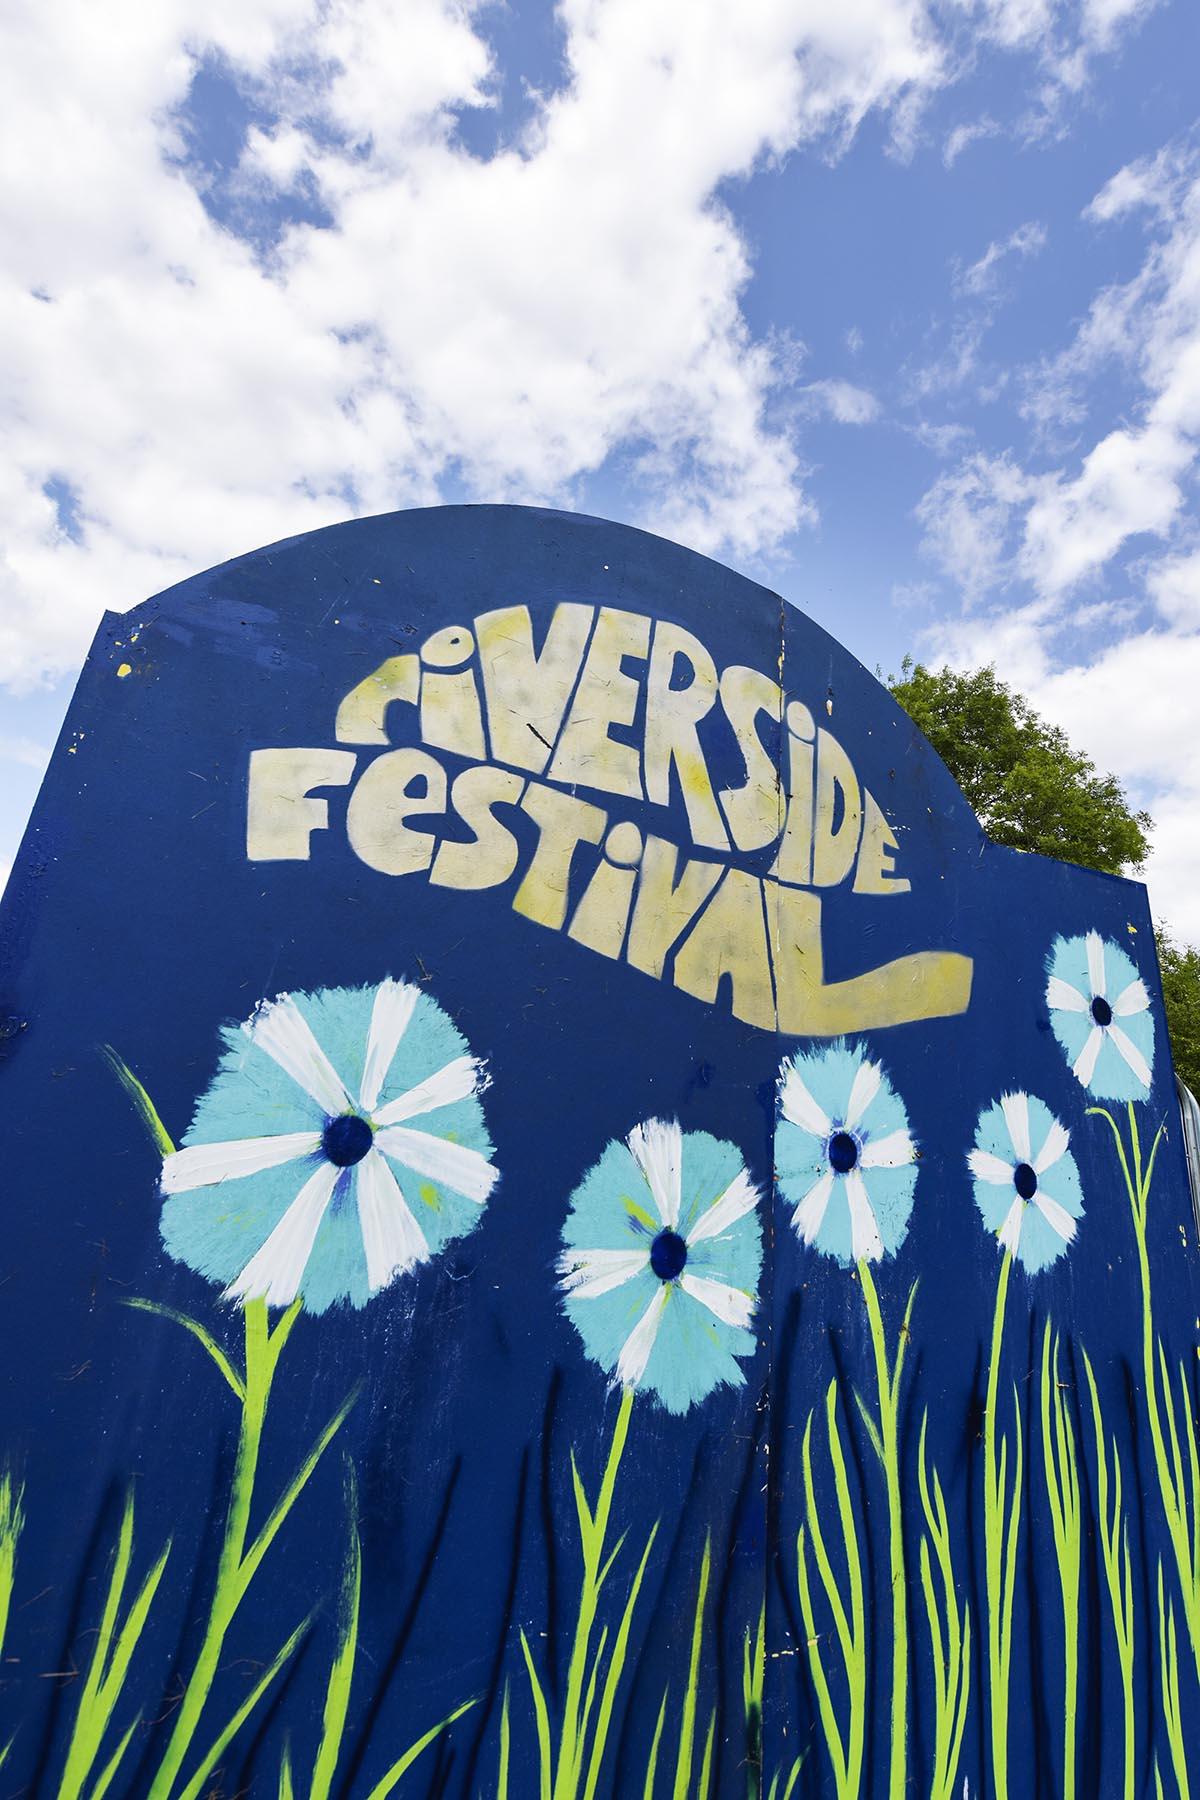 Riverside Festival 2015